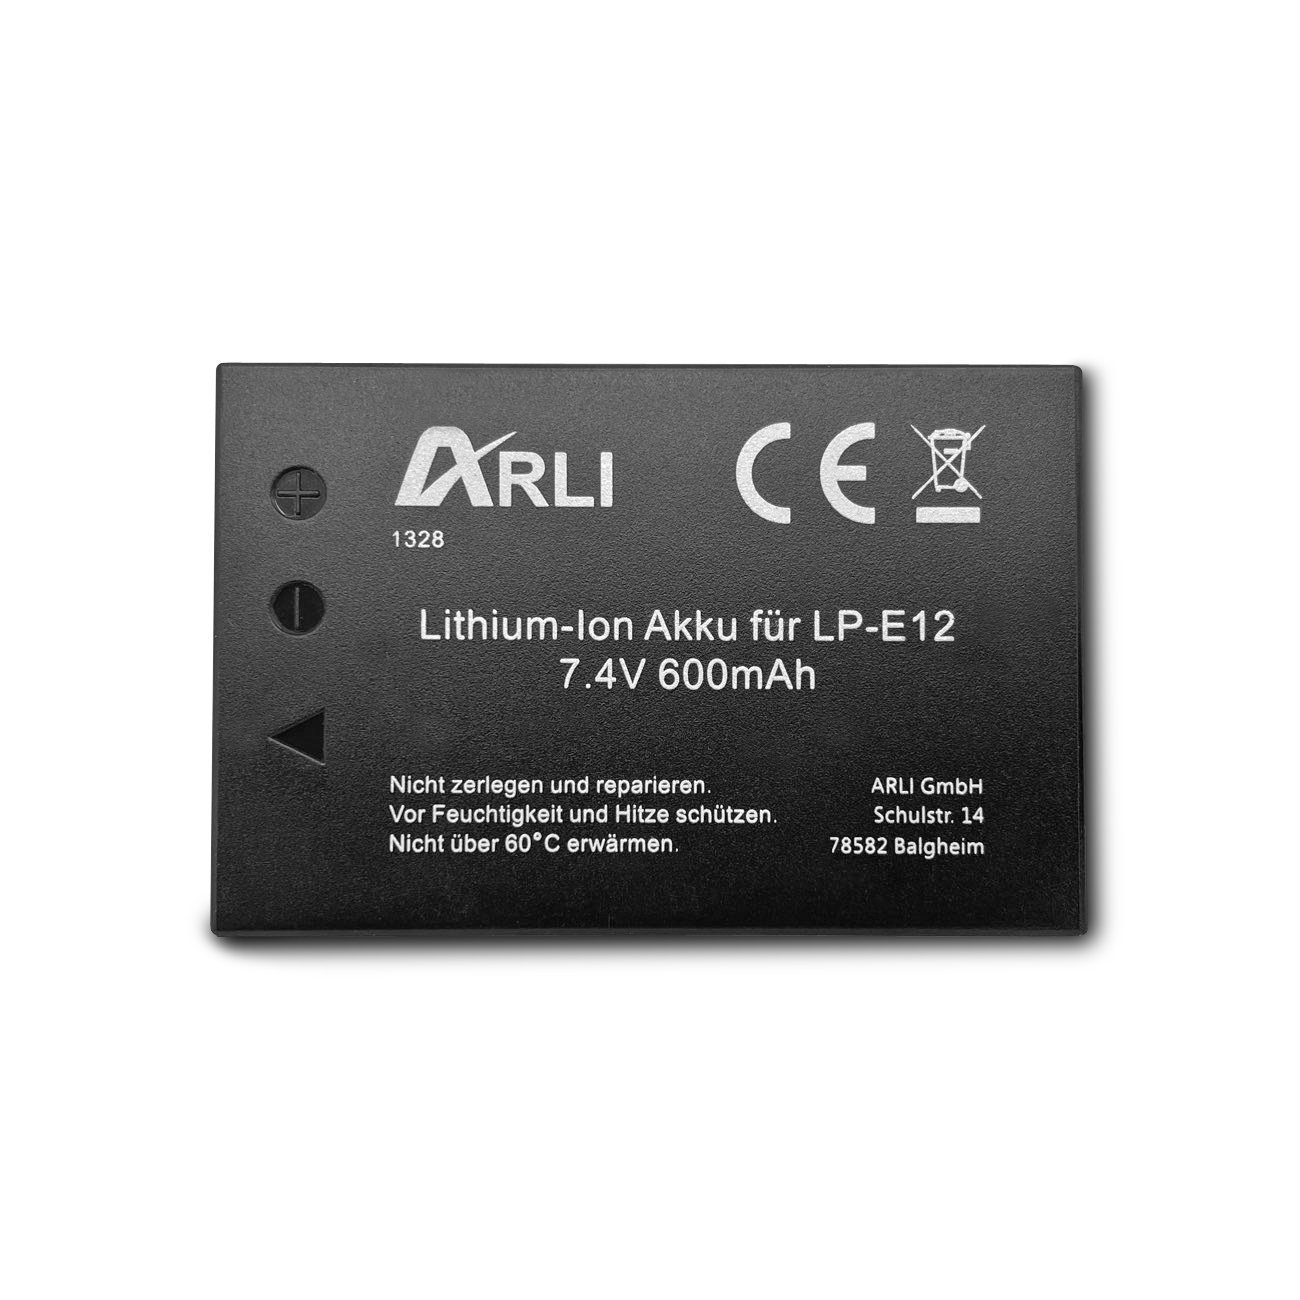 ARLI Akku für Canon EOS M50 EOS-M50 LP-E12 LPE12 Akku 600 mAh, Hohe Sicherheit durch integrierten Hitze- und Überladeschutz